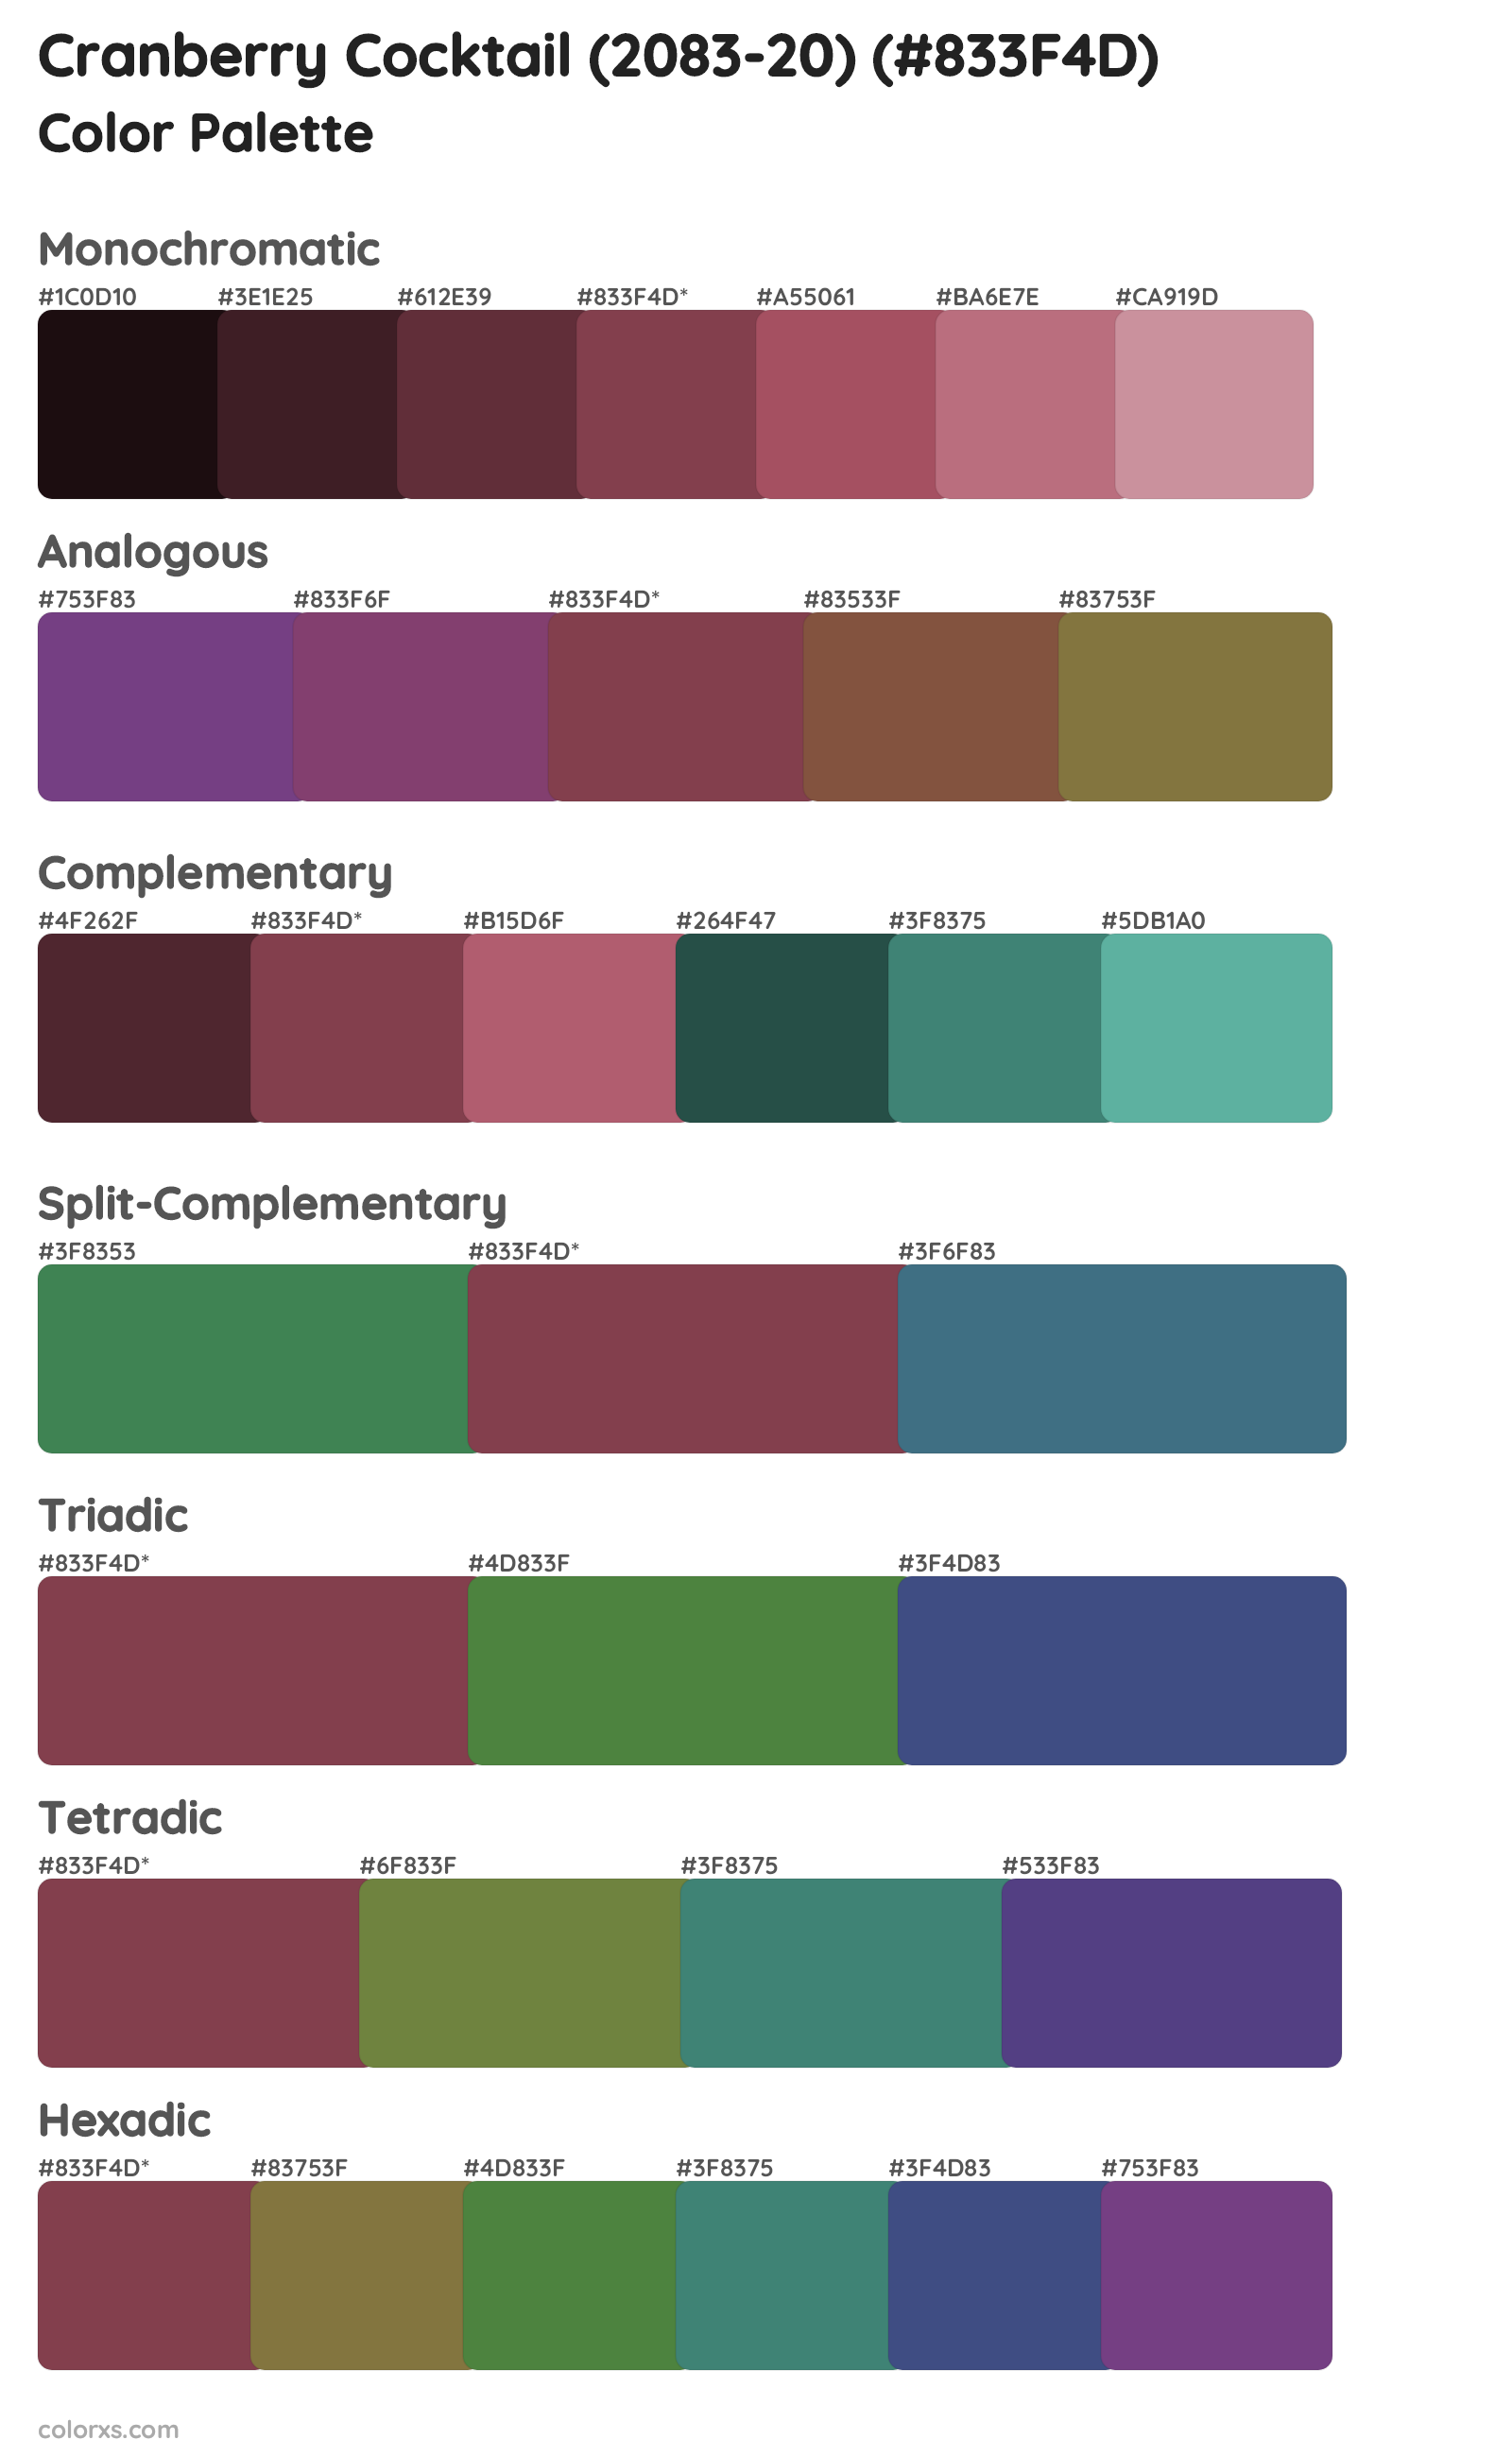 Cranberry Cocktail (2083-20) Color Scheme Palettes